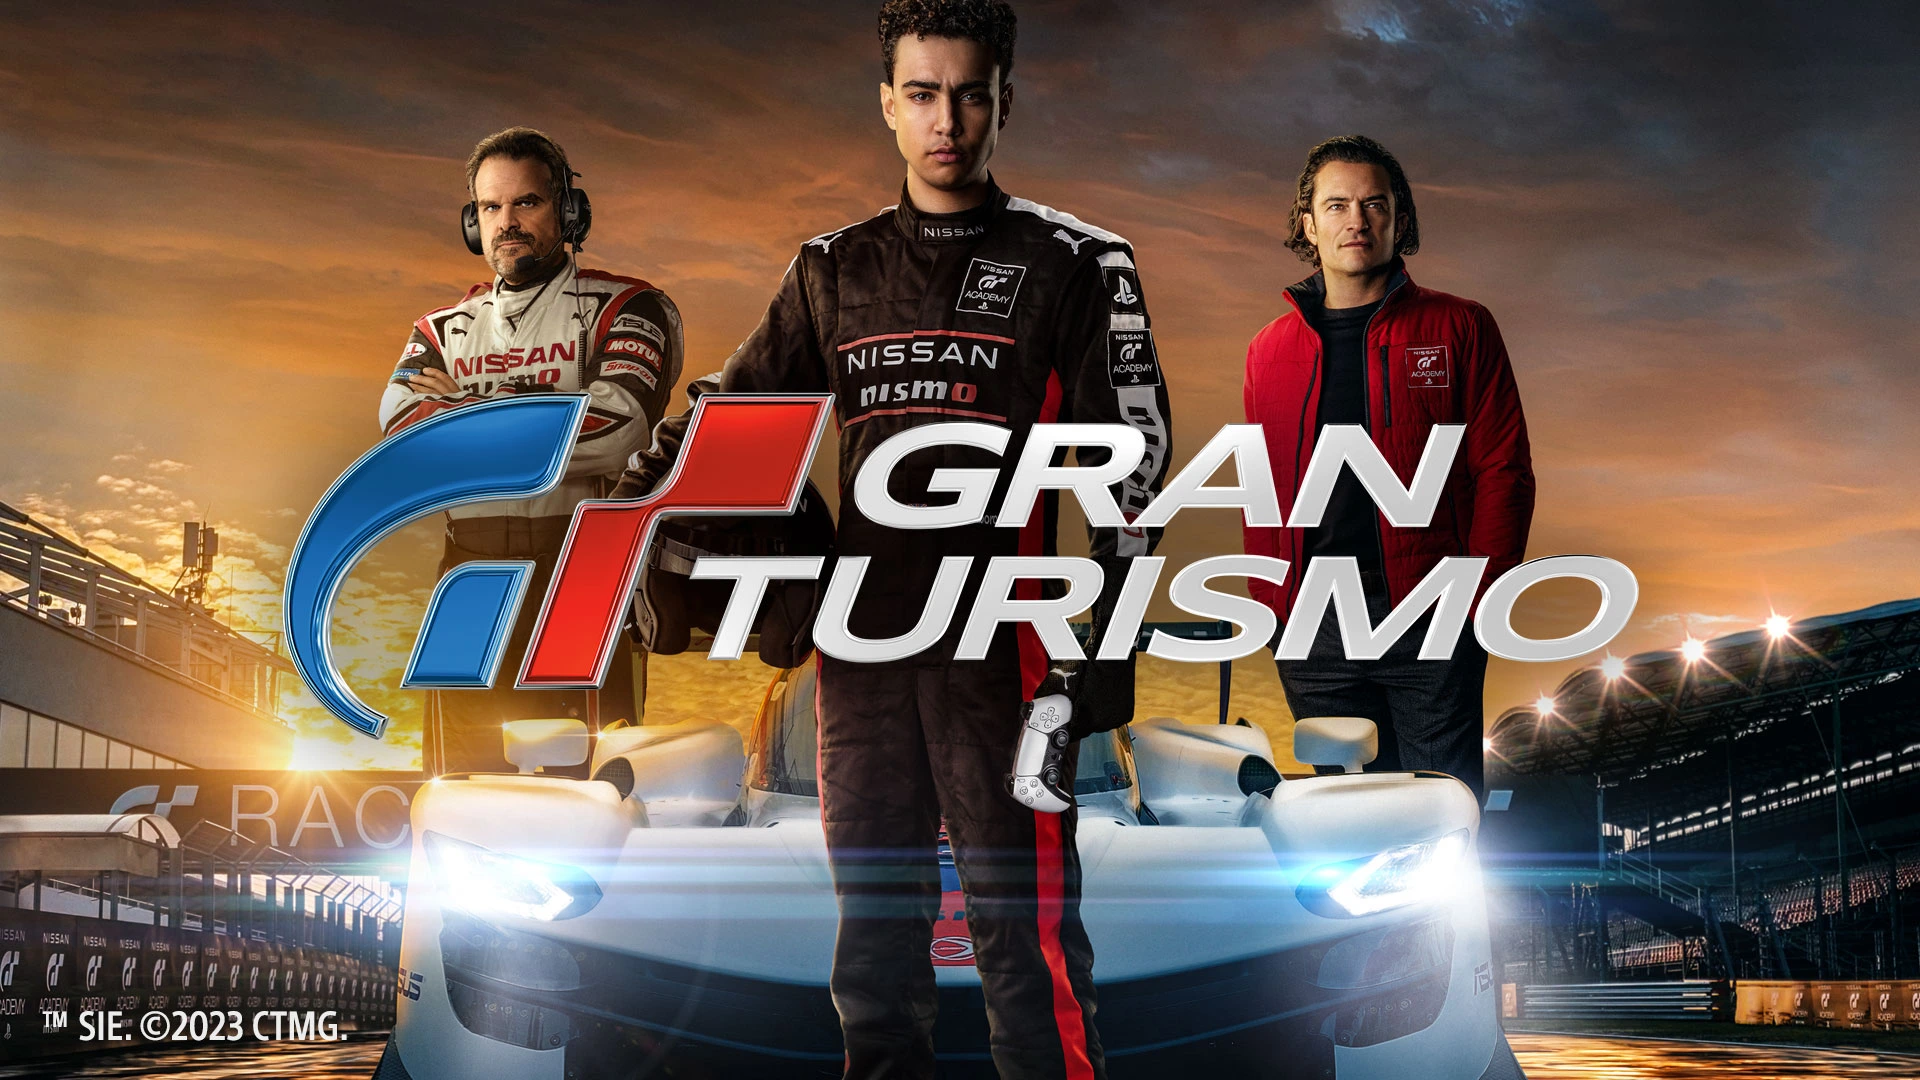 Sinopsis Film Gran Turismo, Kisah Seorang Gamer yang Jadi Pembalap Profesional